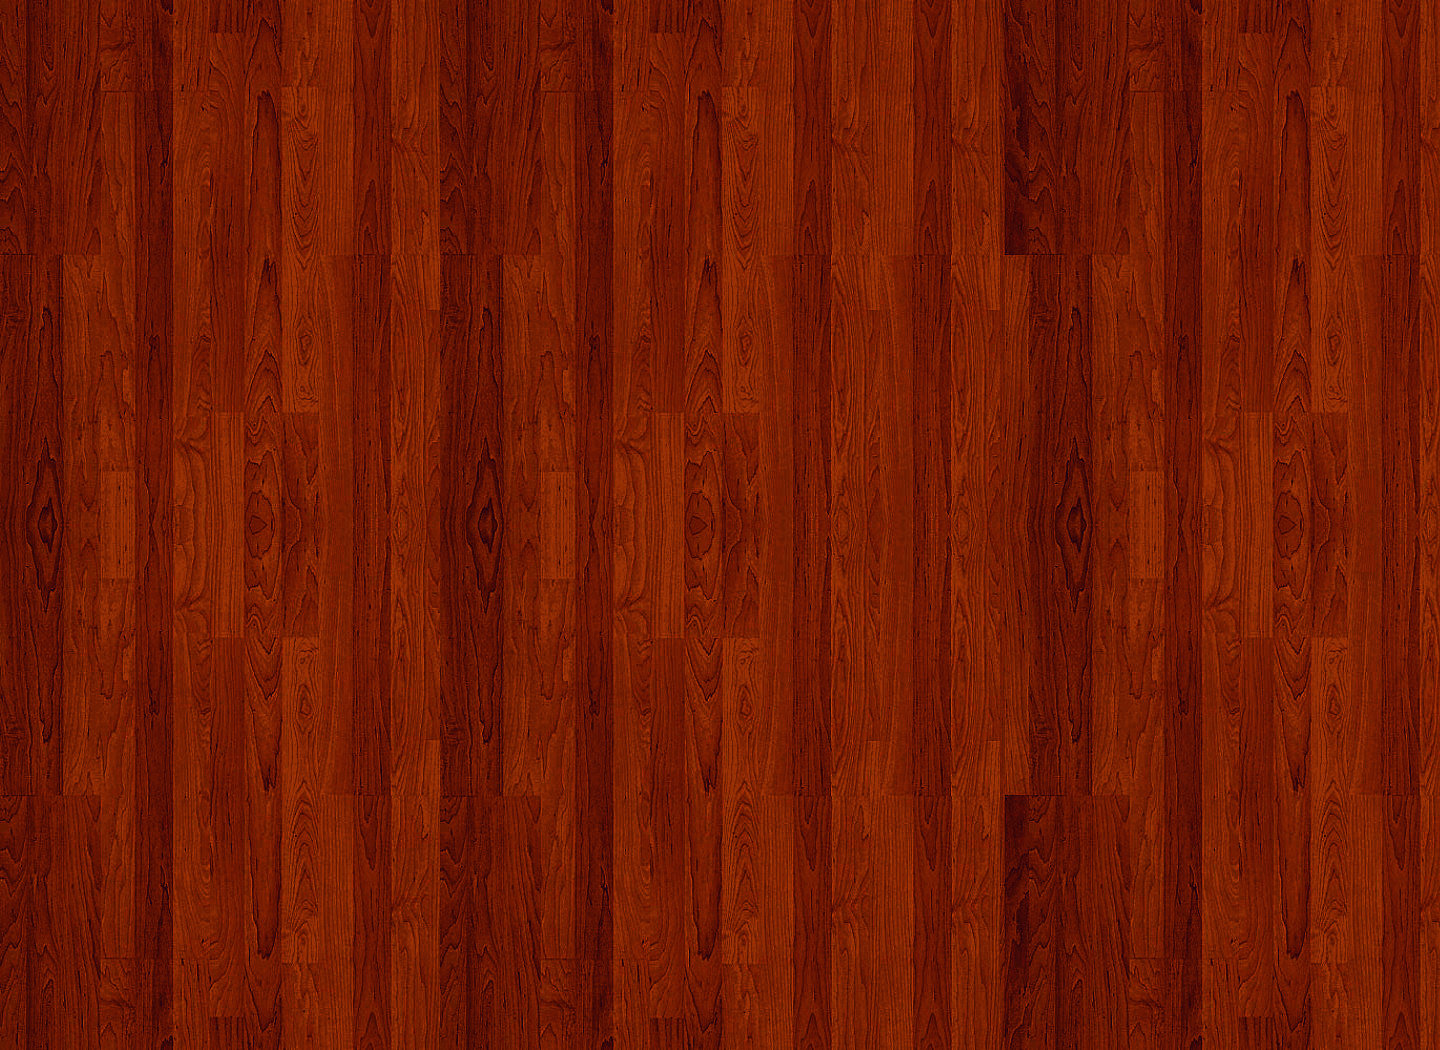 나무 패턴 벽지,나무,나무 바닥,견목,목재 얼룩,갈색